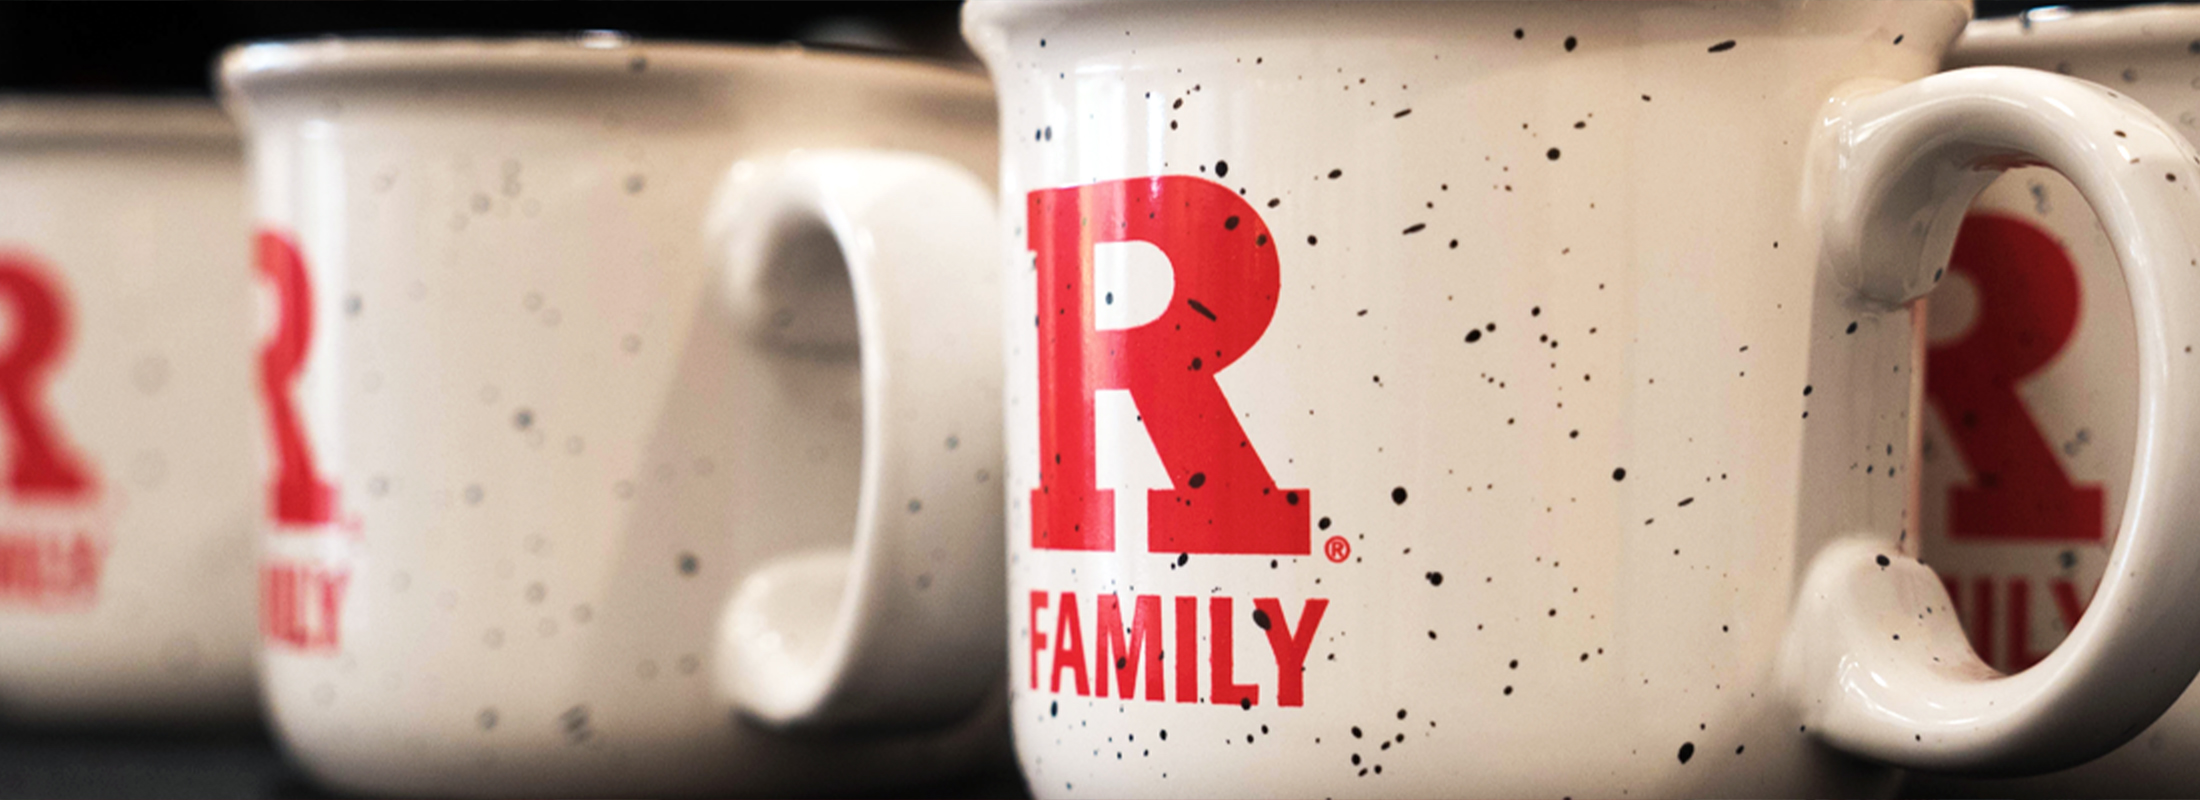 r-family